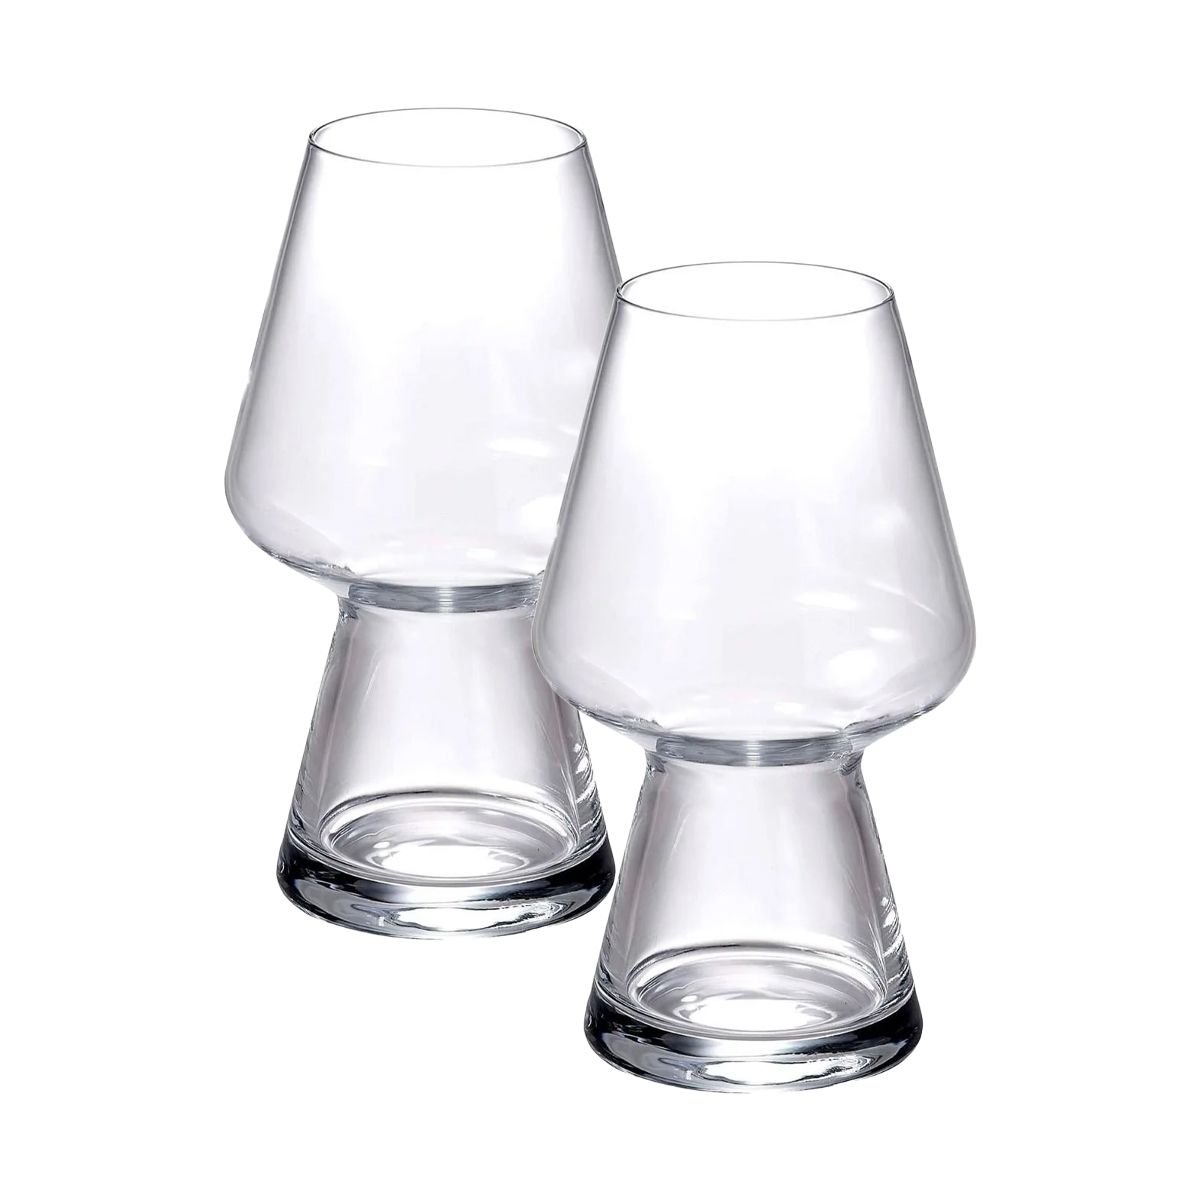 Bormioli Rocco Nonix 19.75 oz. Stackable Pub Beer Glasses (Set of